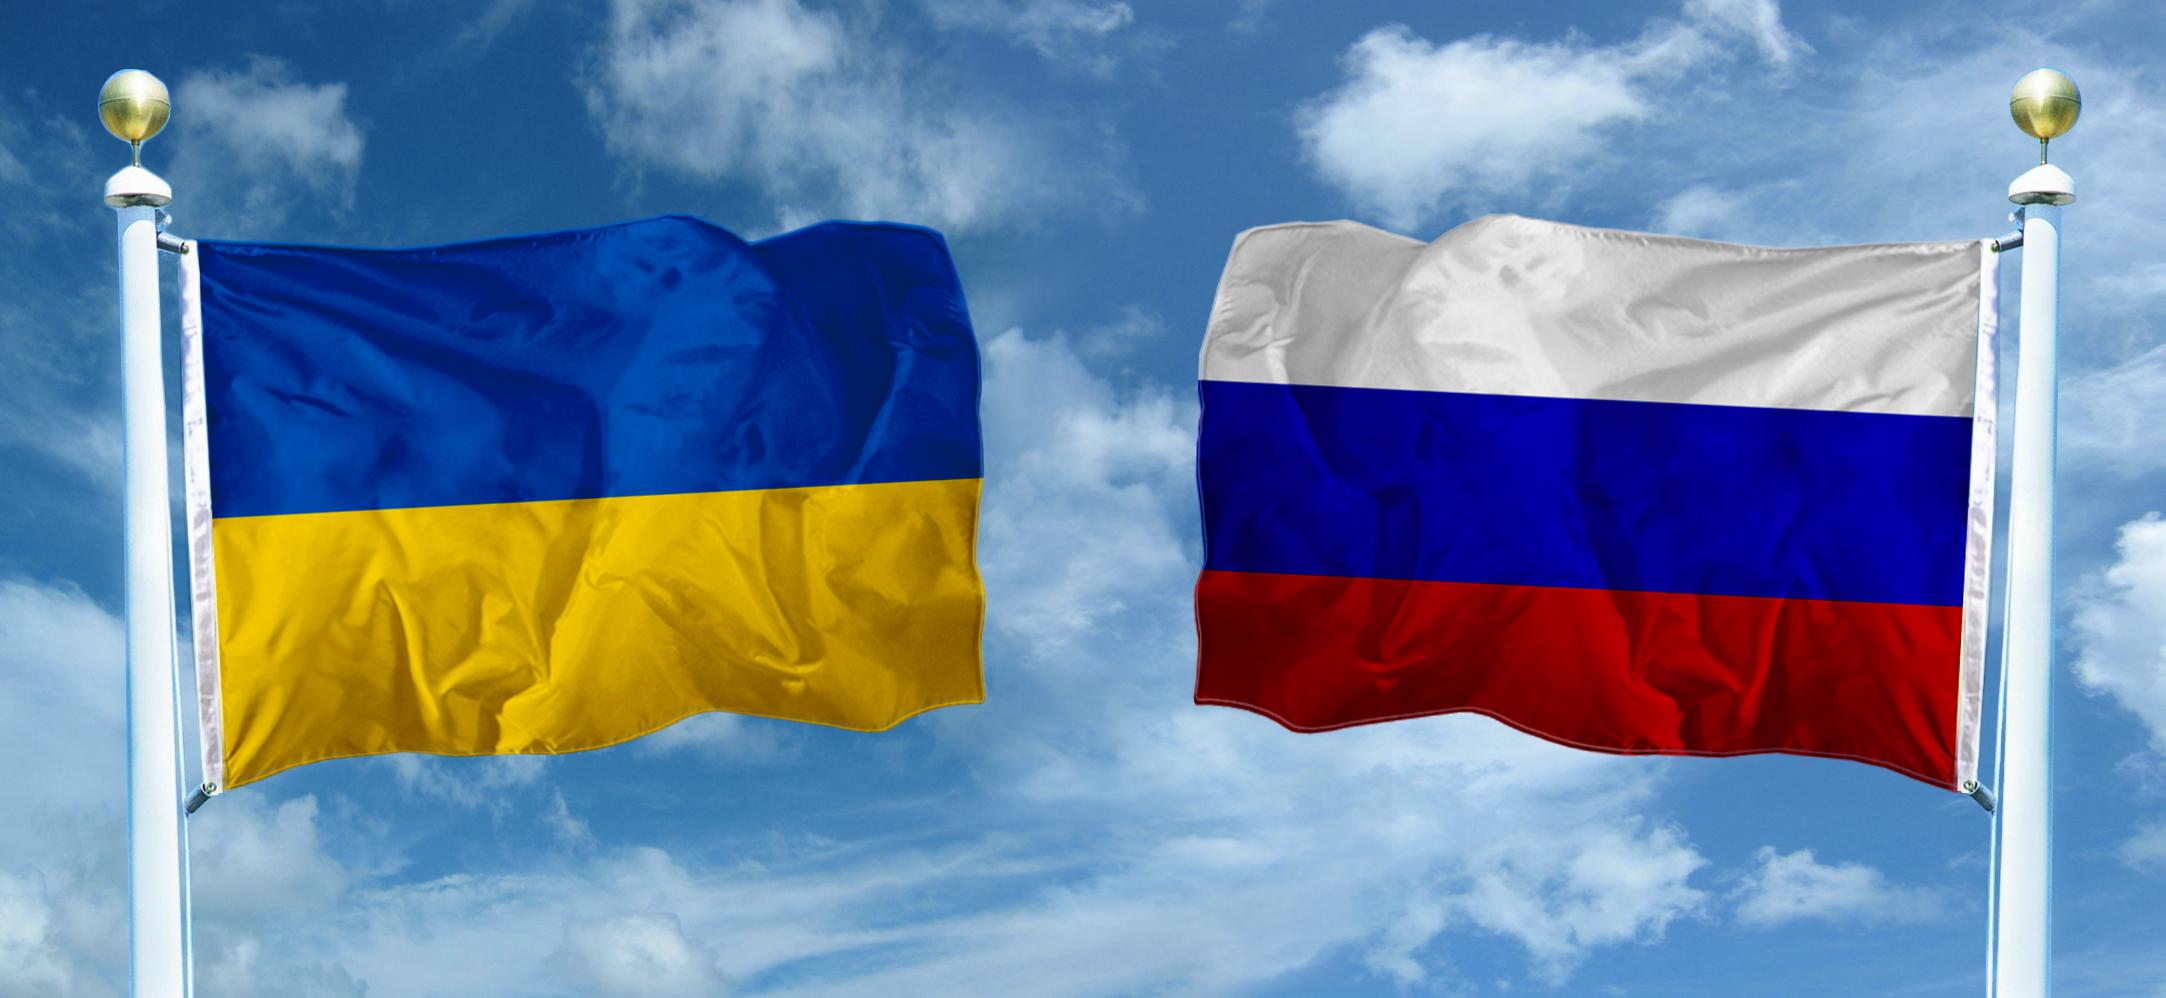 Украина победила Россию в суде: наказание за Крым набирает обороты